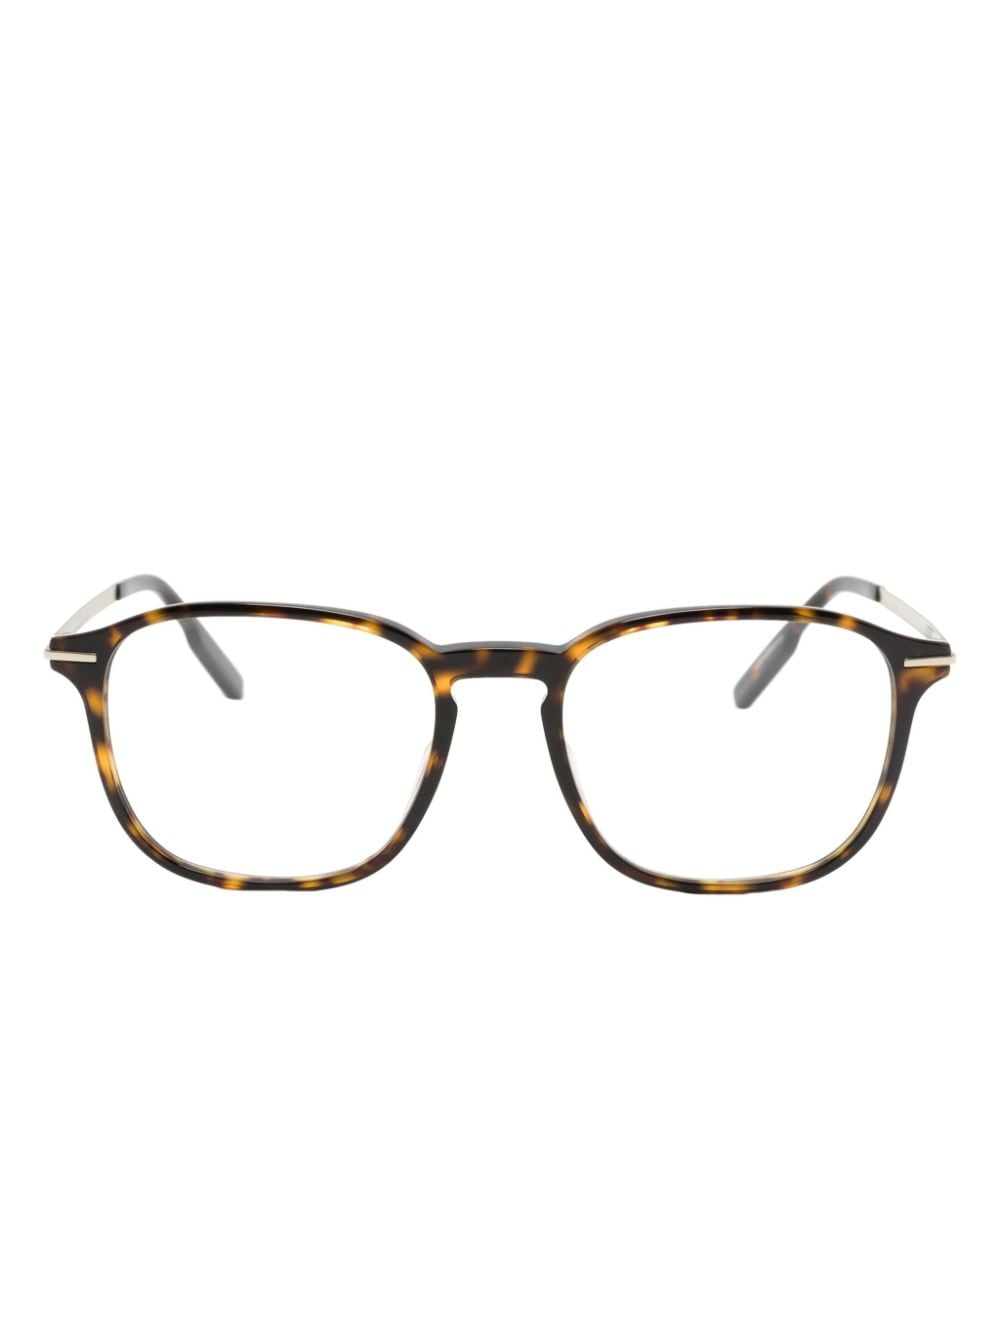 Zegna tortoiseshell-effect square-frame glasses - Brown von Zegna